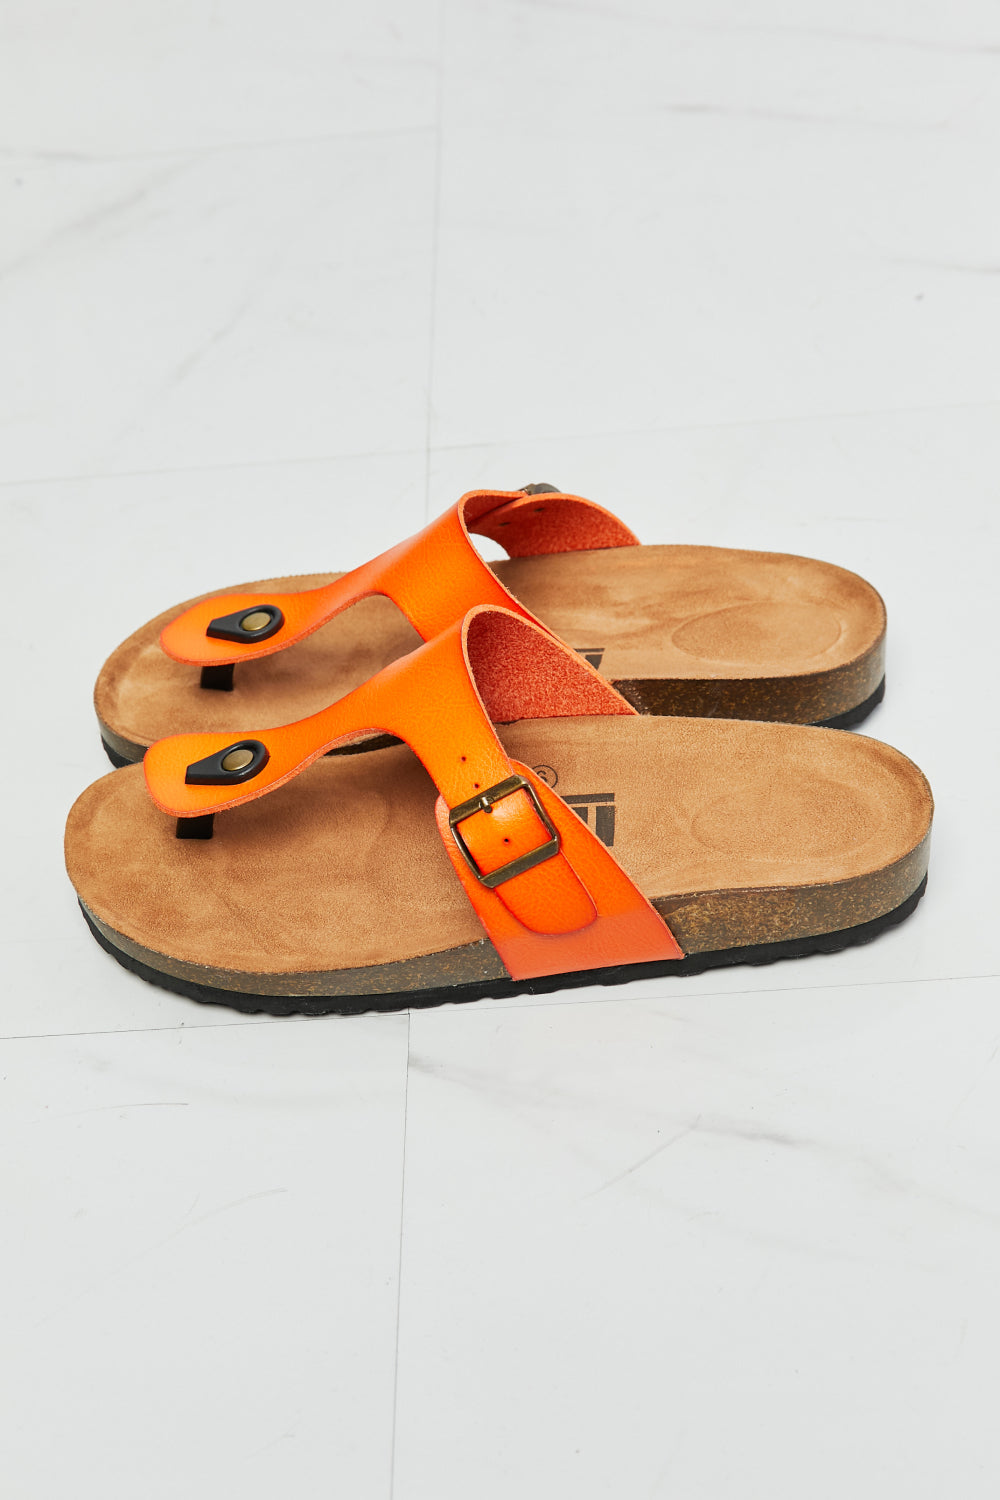 MMShoes Drift Away T-Strap Flip-Flop in Orange - Shop women apparel, Jewelry, bath & beauty products online - Arwen's Boutique